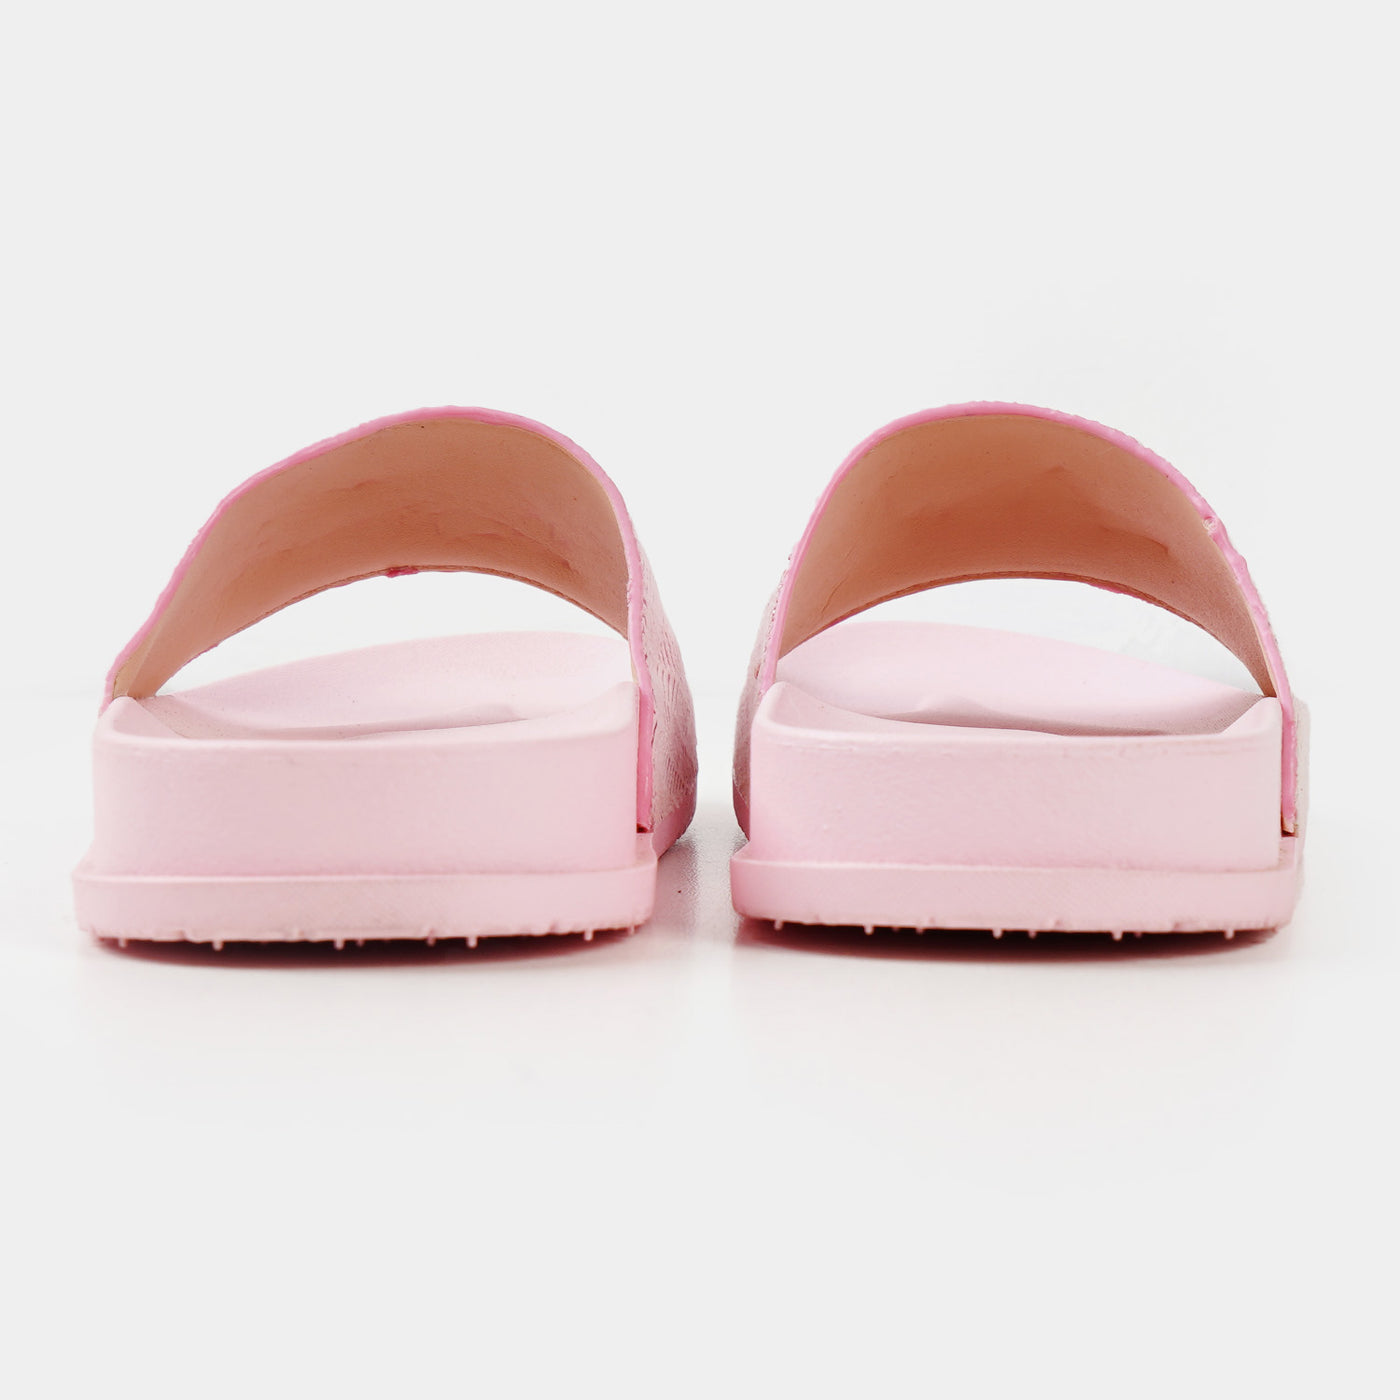 Teens Girls Slipper CL-12 - Pink